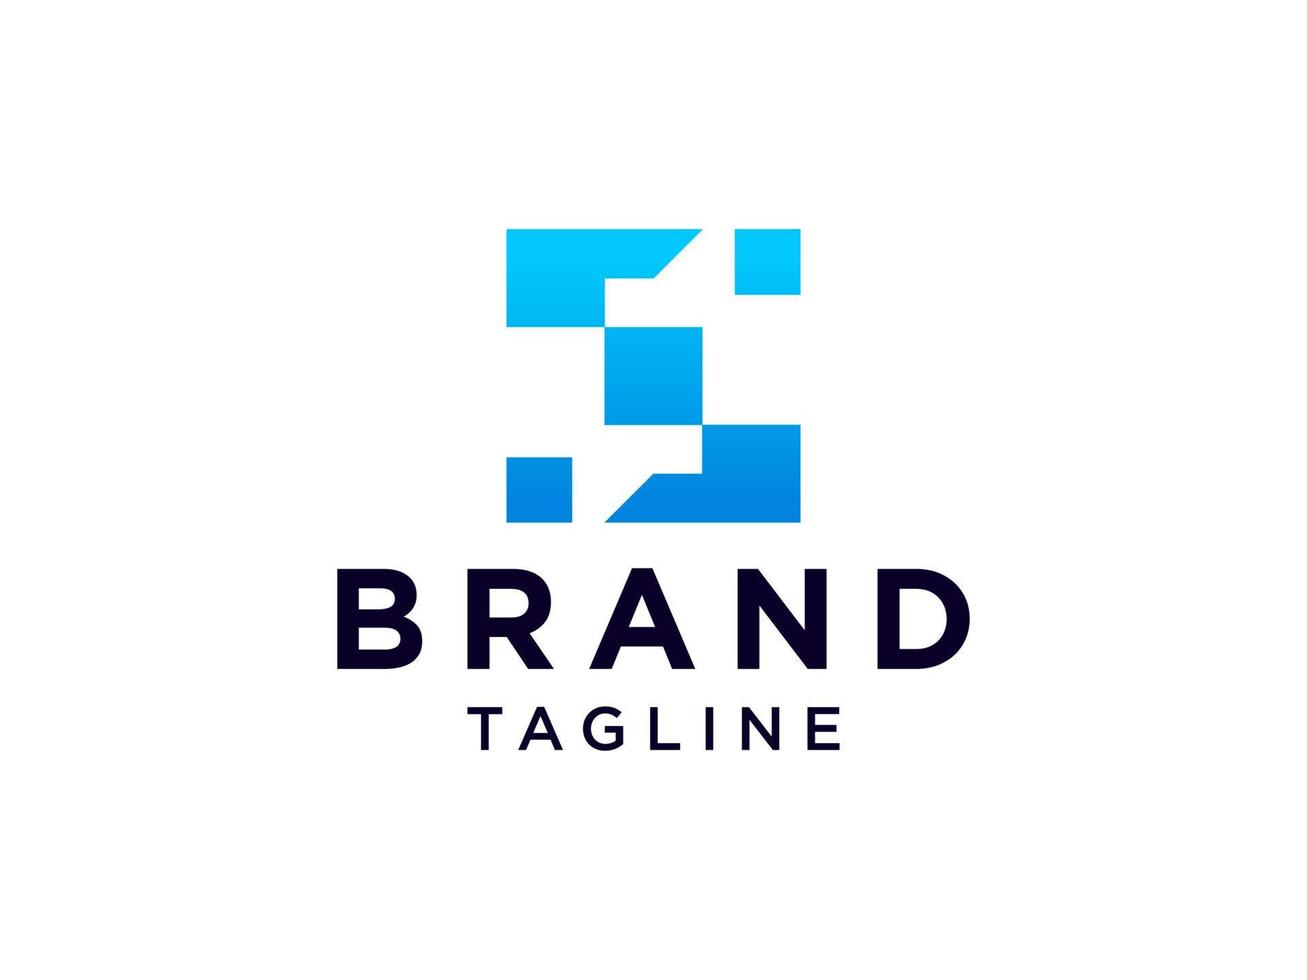 eerste letter s-logo. blauwe geometrische zeshoekige lijn origami stijl geïsoleerd op een witte achtergrond. bruikbaar voor bedrijfs-, bouw- en branding-logo's. platte vector logo-ontwerpsjabloon sjabloon.